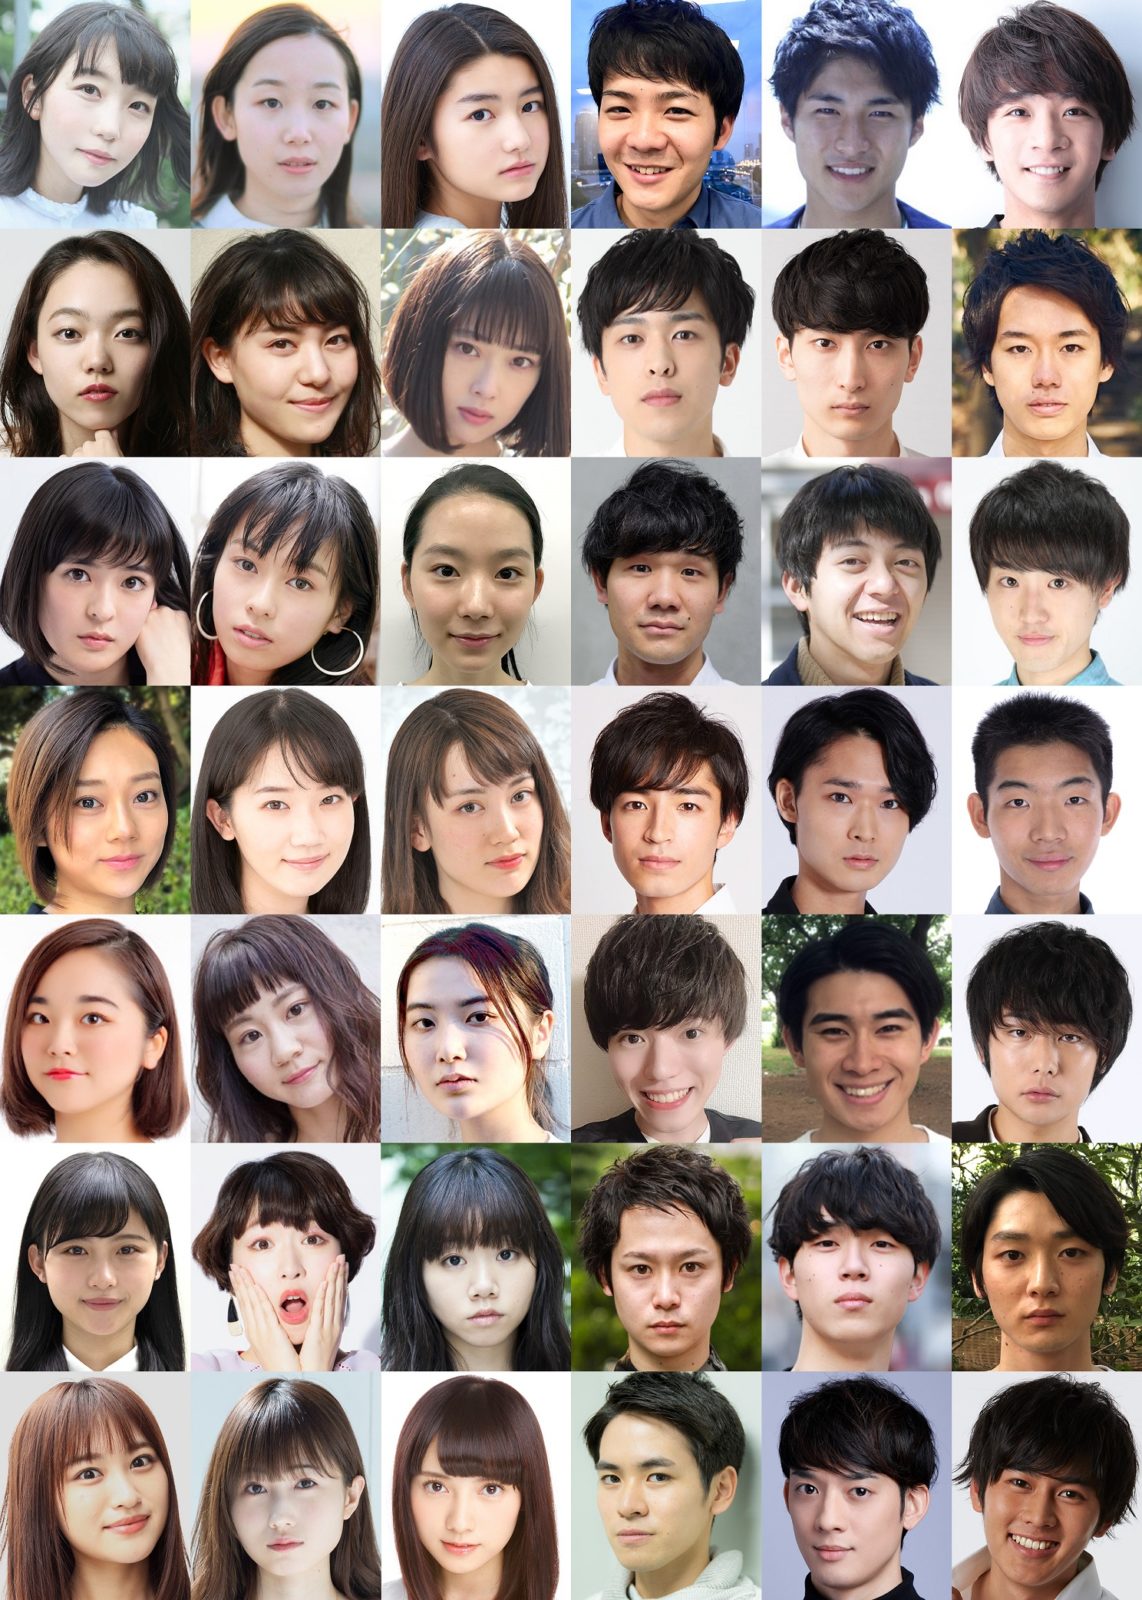 若手俳優発掘プロジェクト 舞台 転校生 公募オーディションで選ばれた男女42名の俳優たちが決定 19年5月22日 エキサイトニュース